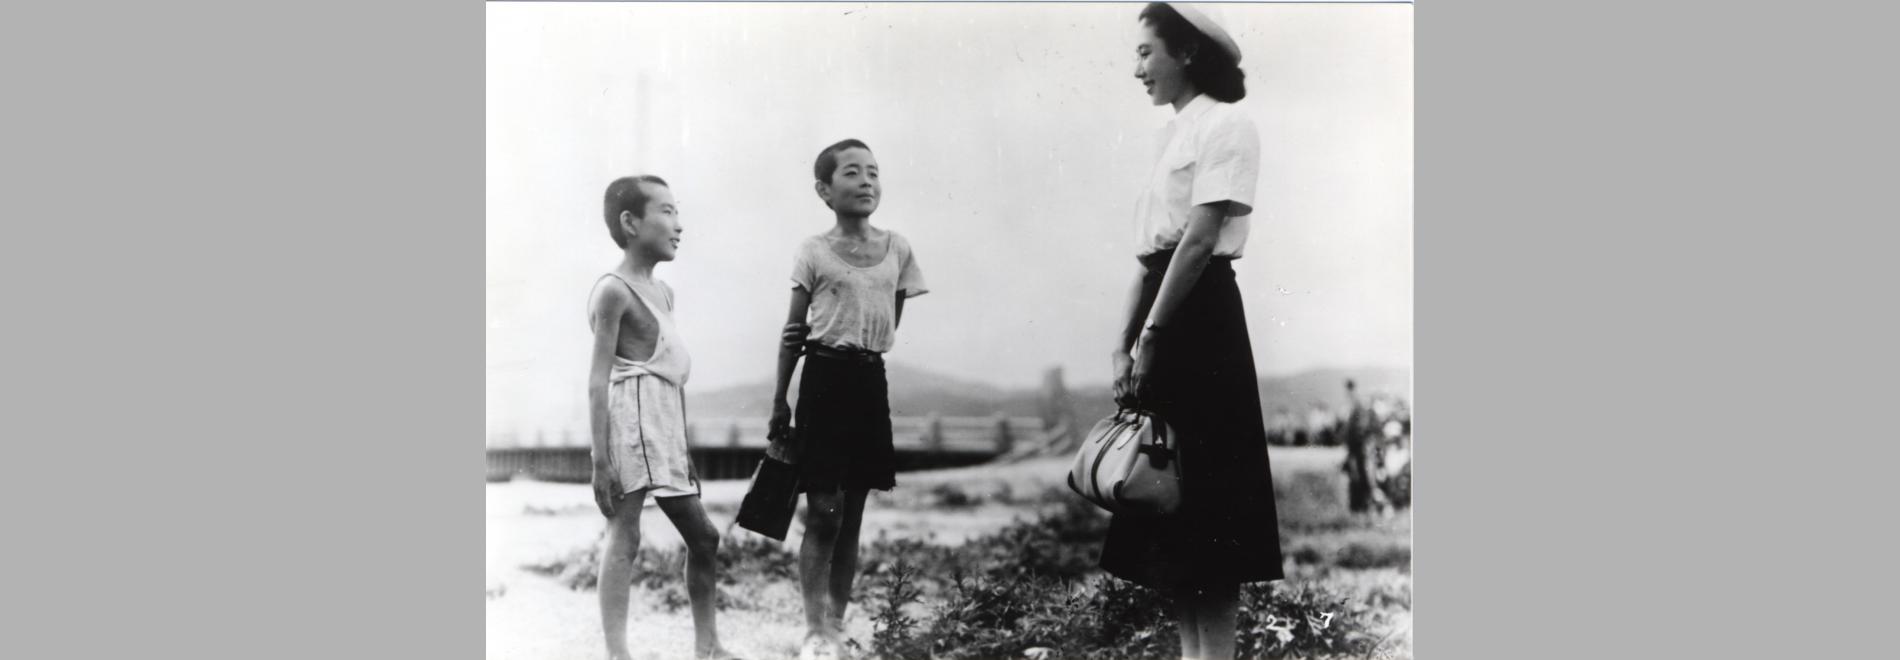 Genbaku no ko / Nens d’Hiroshima (Kaneto Shindô, 1952)